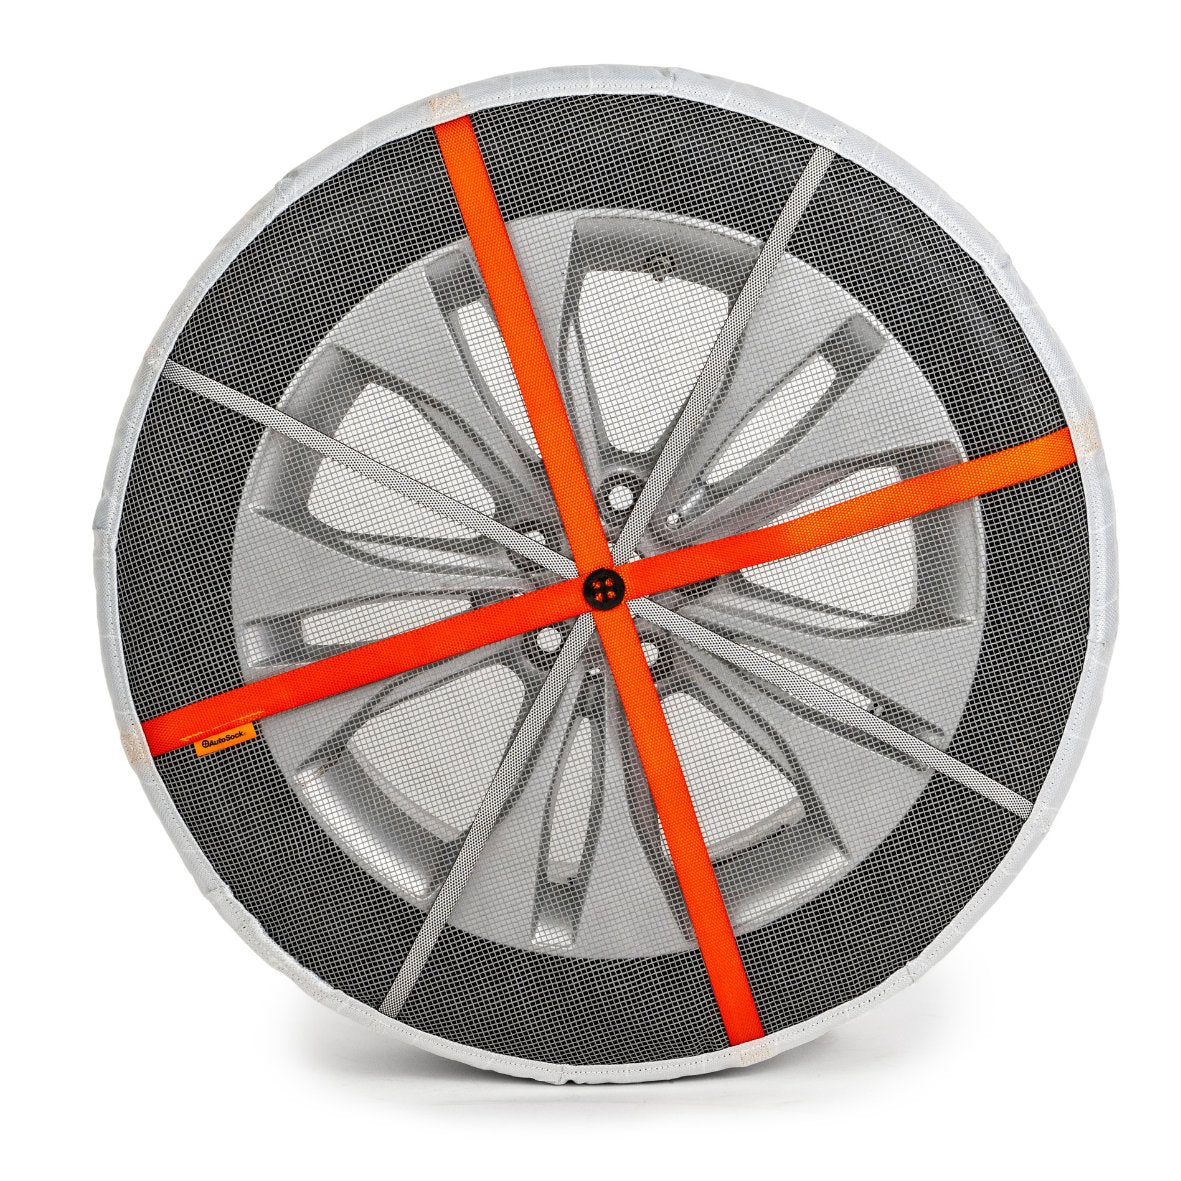 Vista frontal de un calcetín de neumático AutoSock montado en la rueda que muestra la tela de contacto con la carretera, las correas y la tela delantera